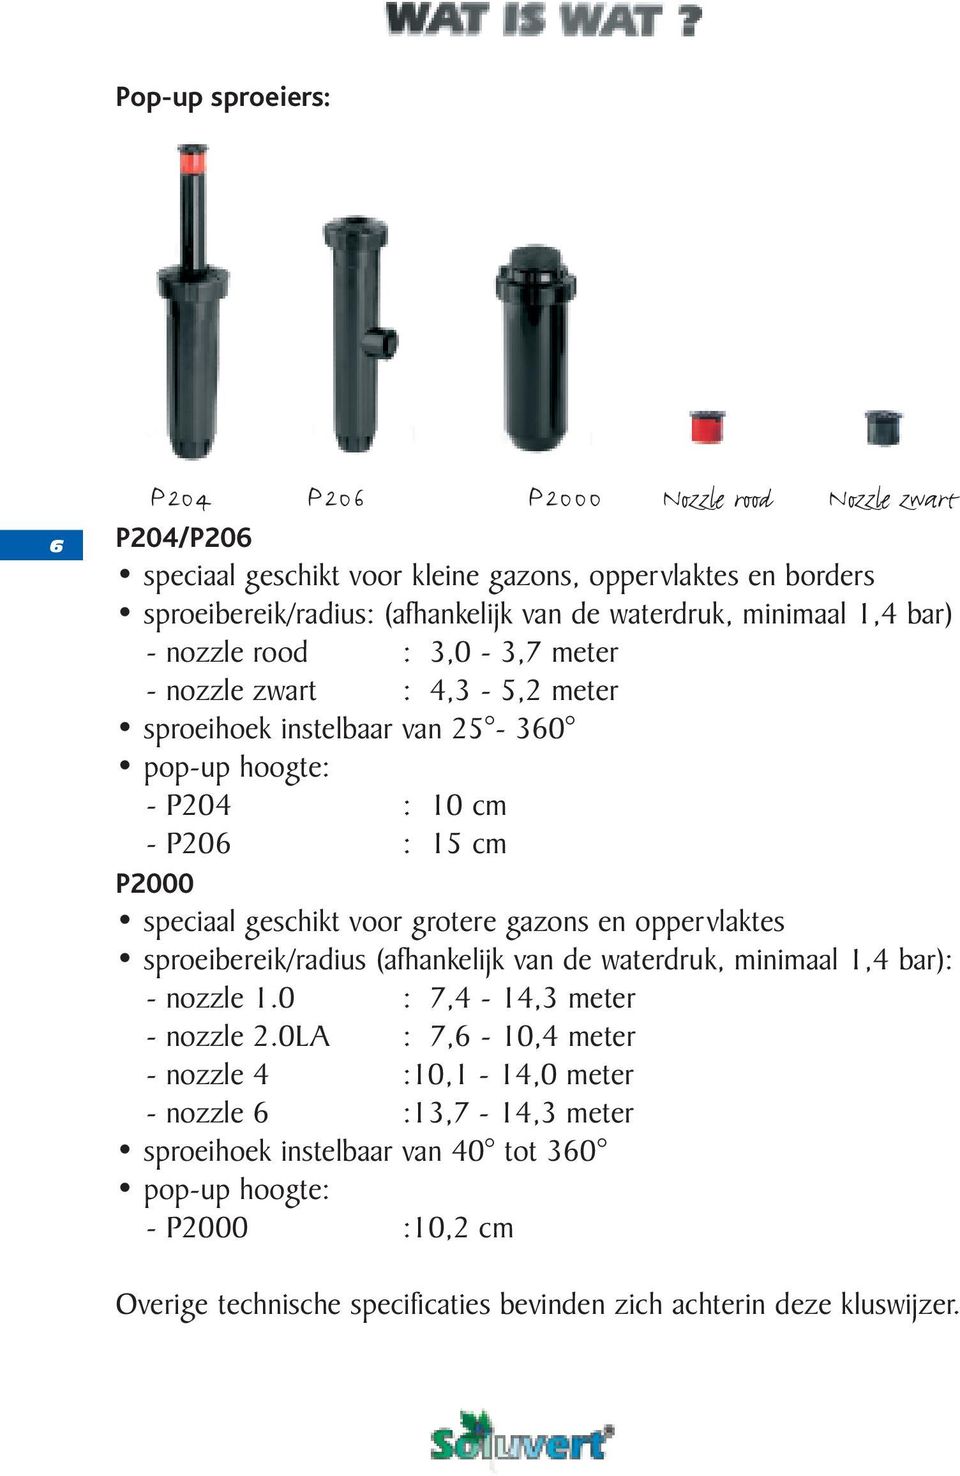 geschikt voor grotere gazons en oppervlaktes sproeibereik/radius (afhankelijk van de waterdruk, minimaal 1,4 bar): - nozzle 1.0 : 7,4-14,3 meter - nozzle 2.